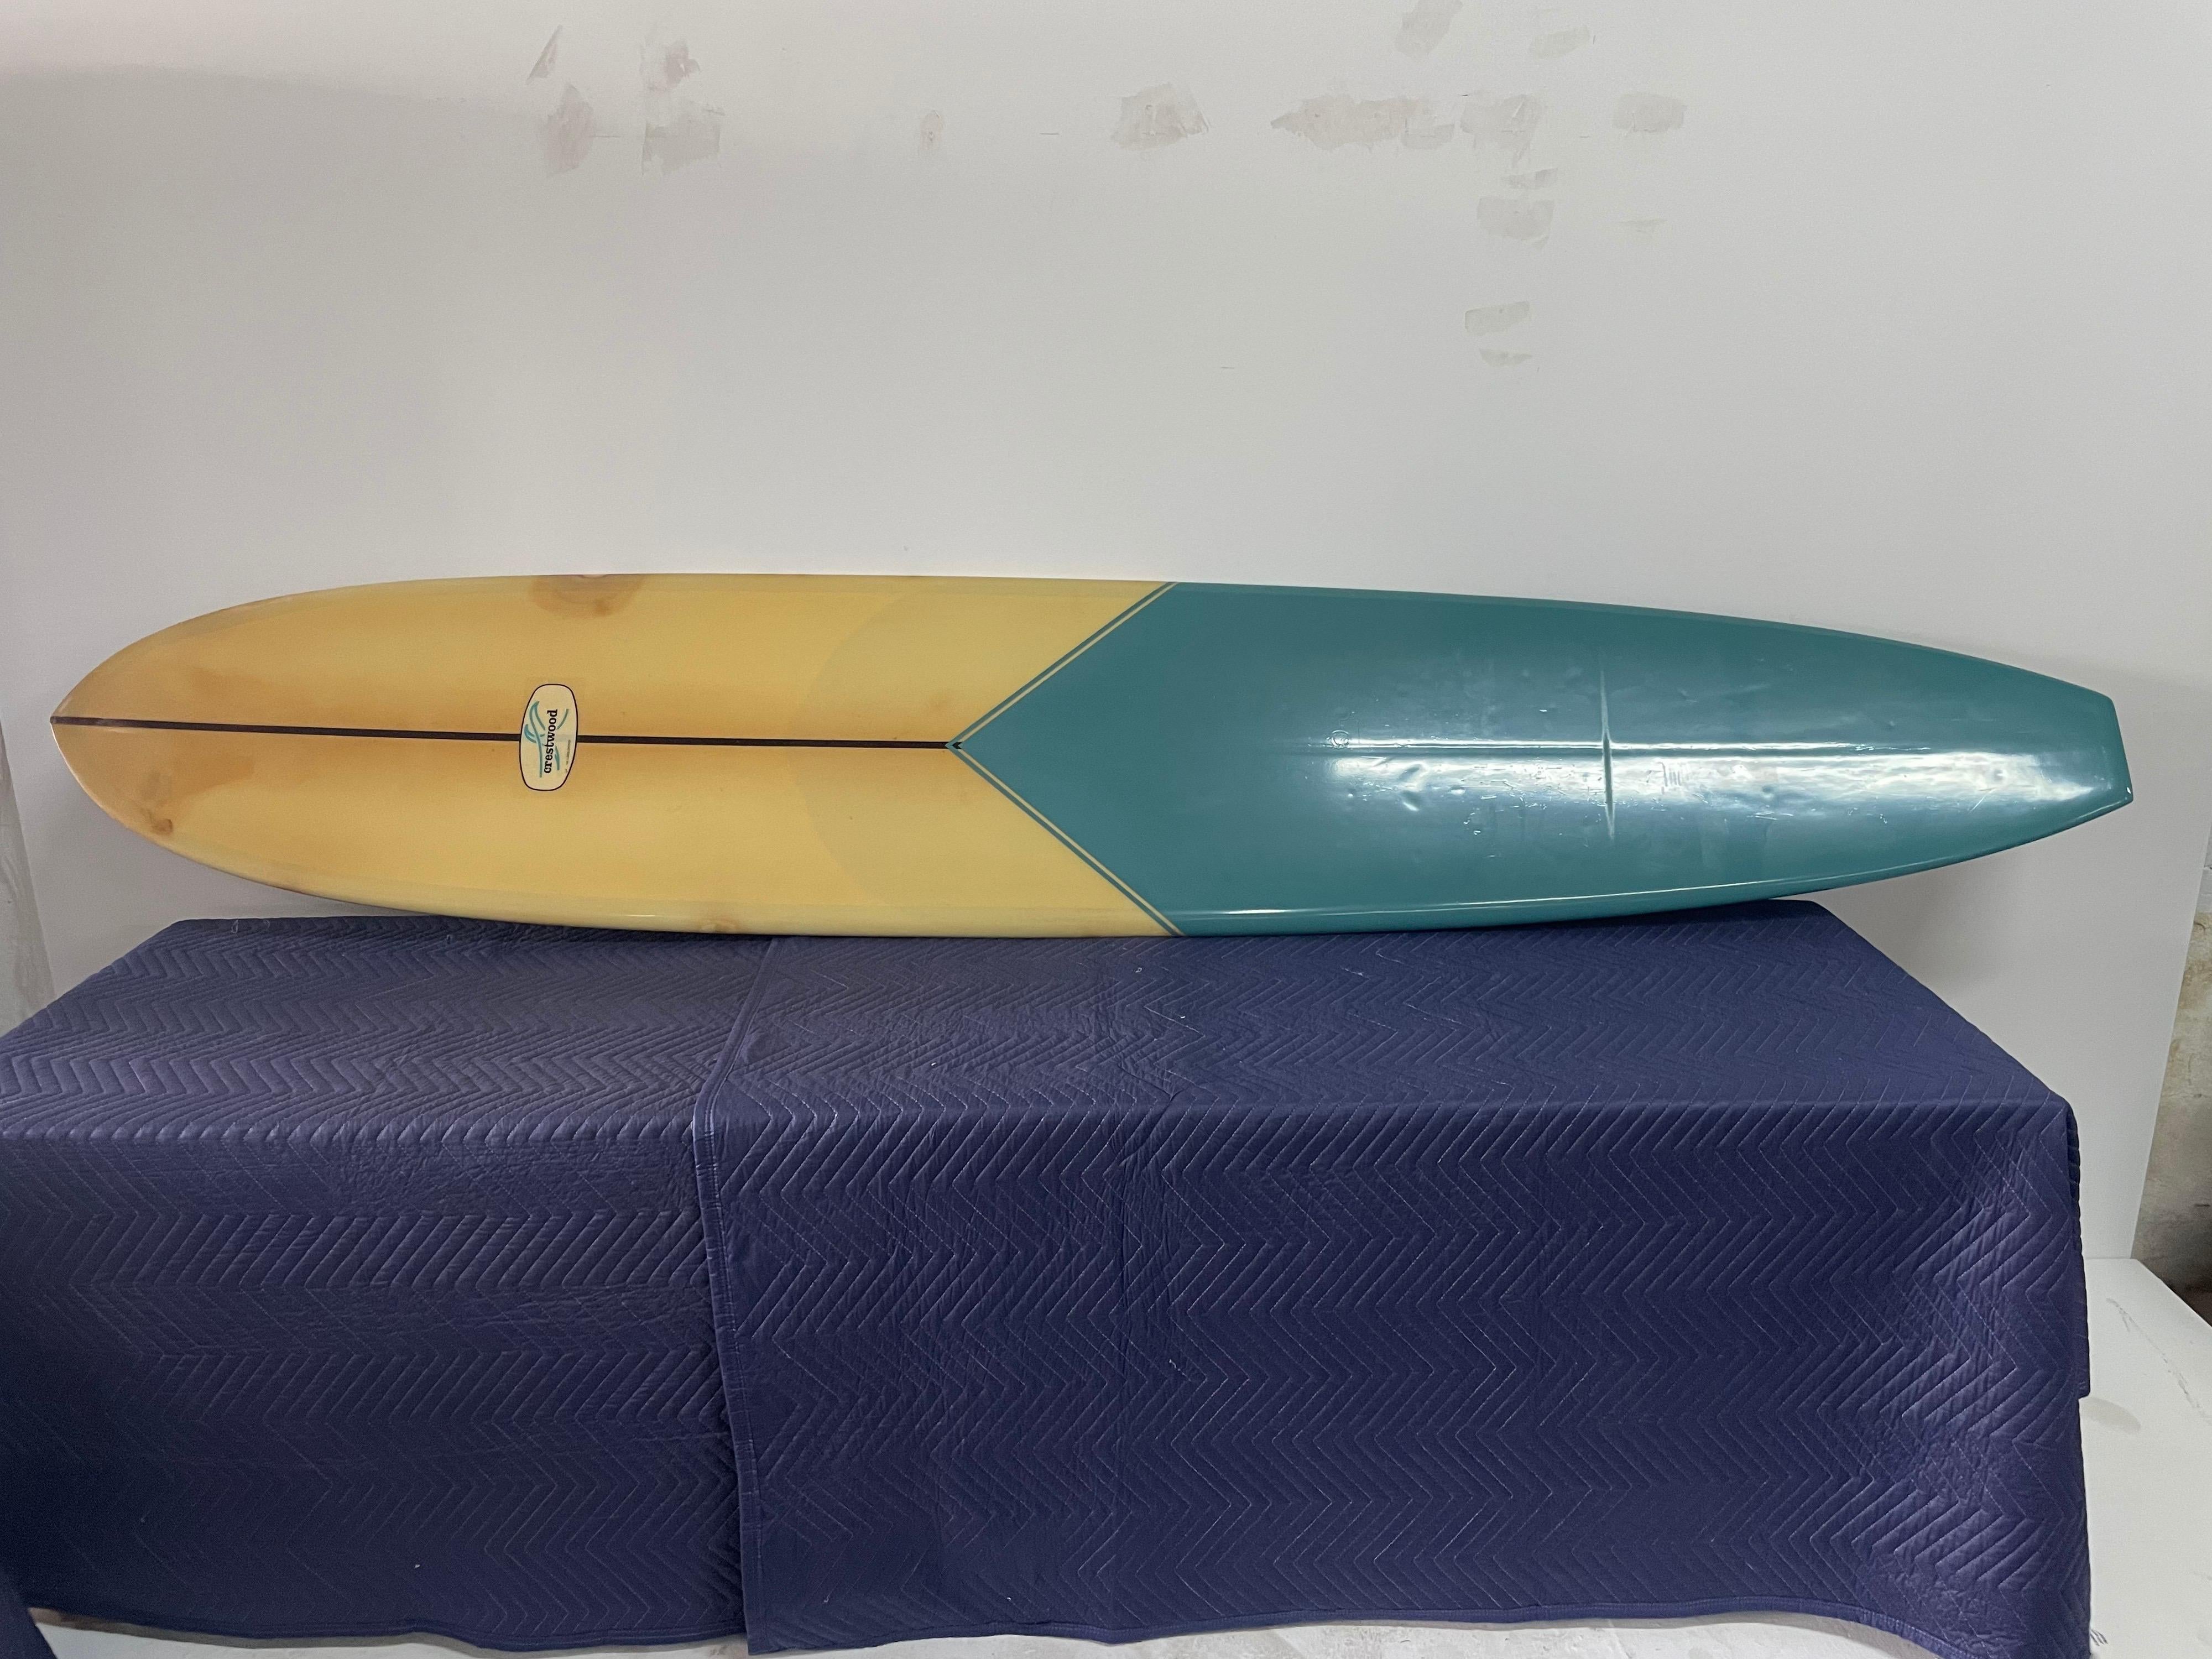 1966 Vintage Crestwood Longboard / Surfboard by Billy Sautner 2